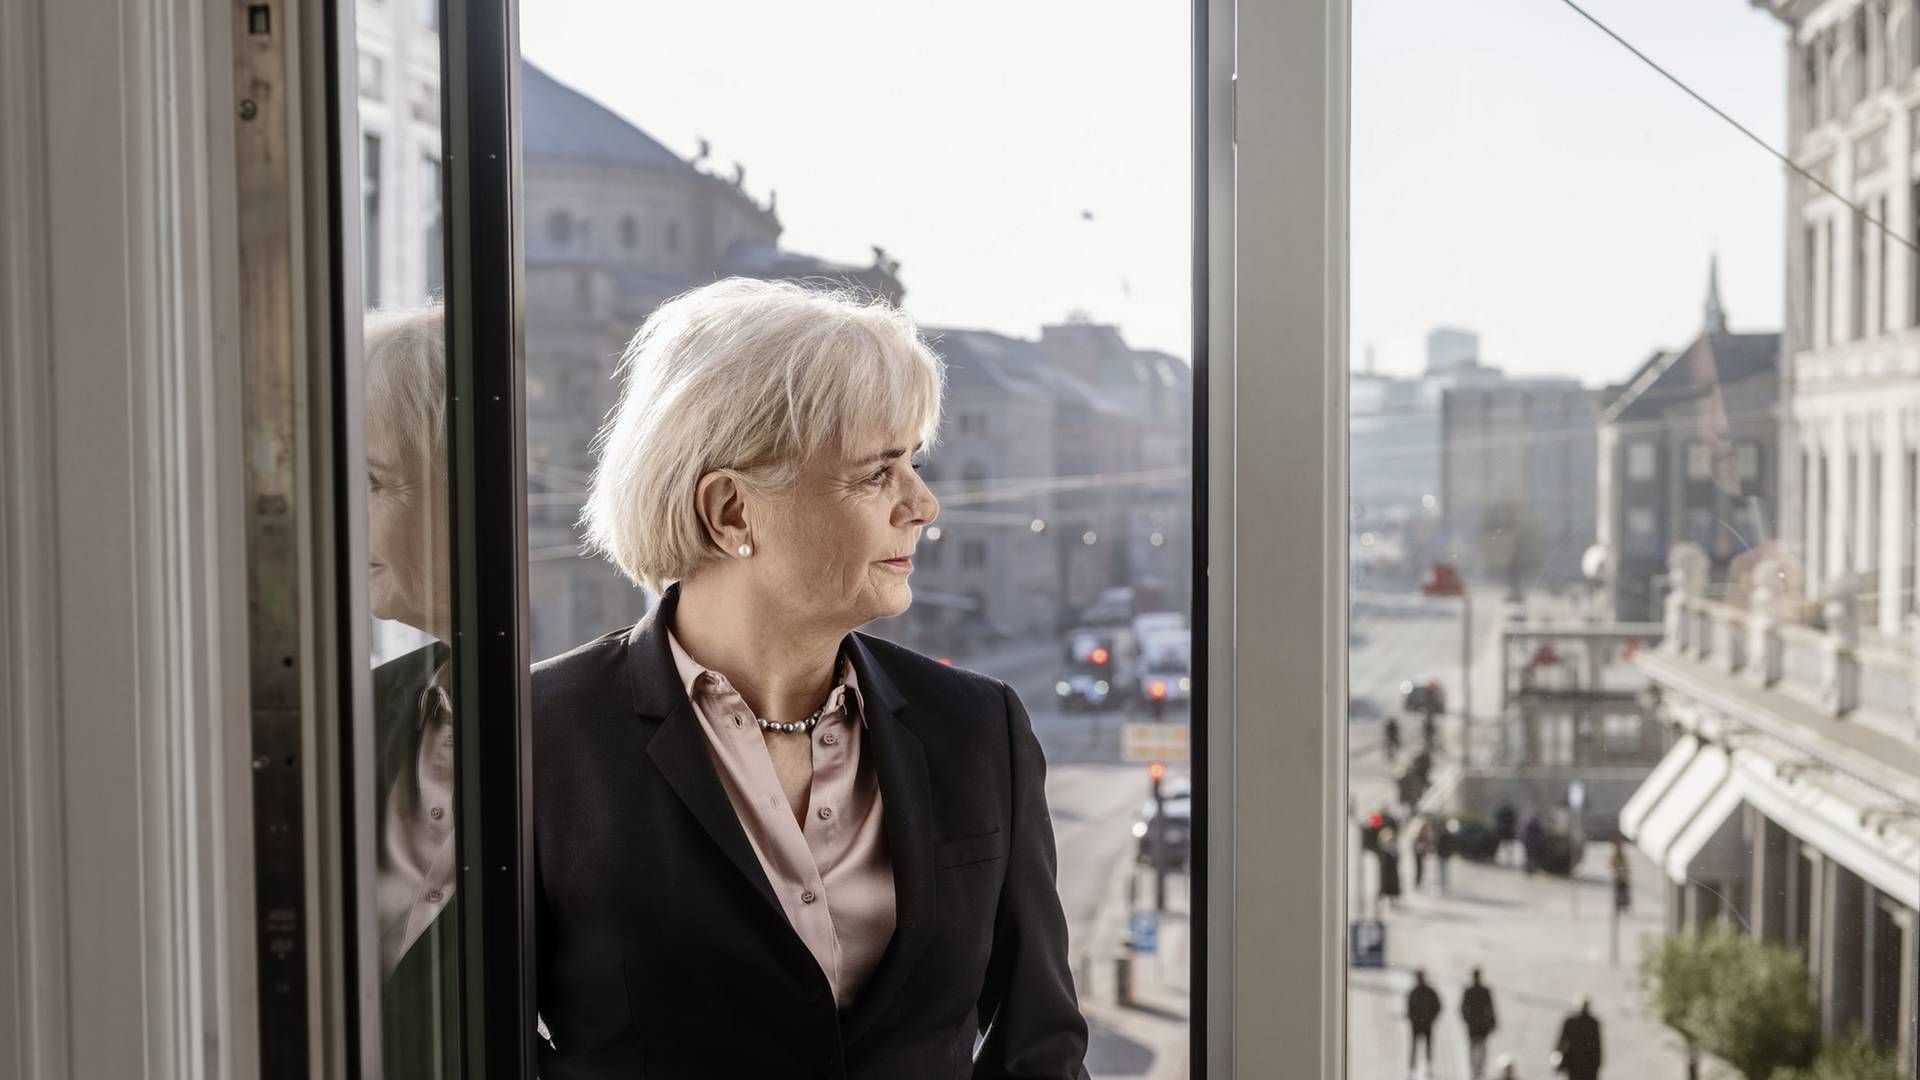 Adm. direktør Karen Frøsig fra Sydbank præsenterede onsdag det bedste resultat i bankens historie med et overskud på 1,9 mia. kr. | Foto: PR / Sydbank/BAM